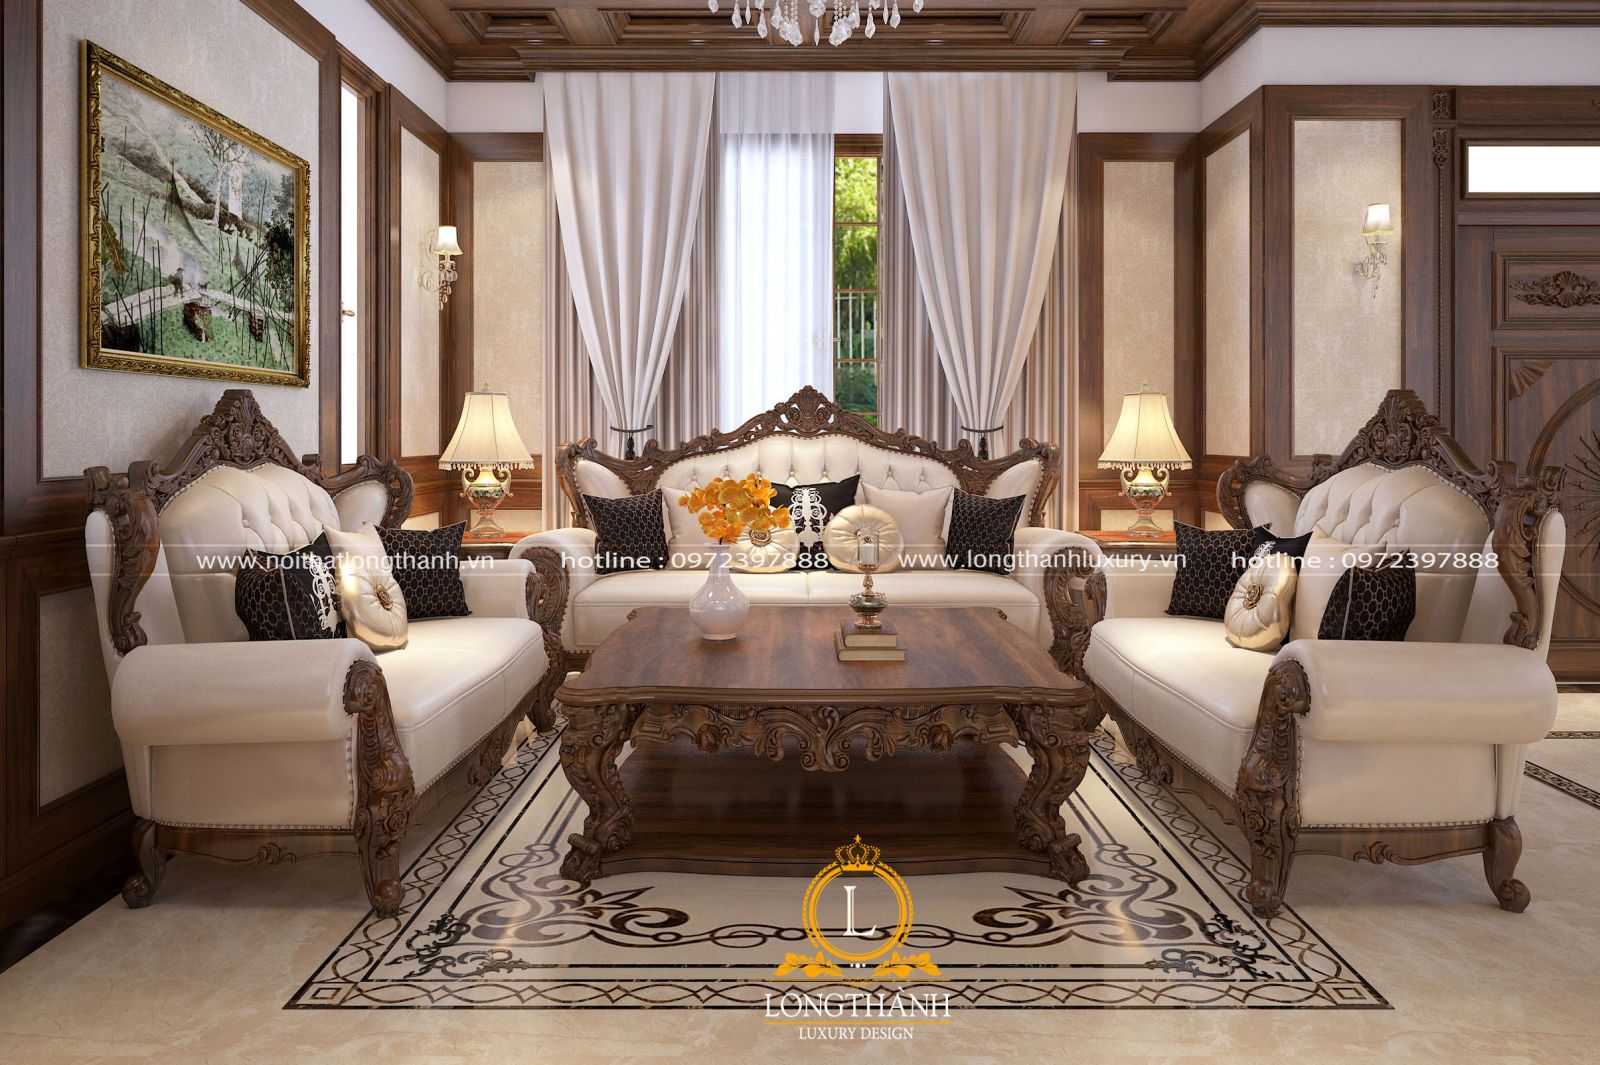 Mẫu sofa tân cổ điển cho phòng khách nhà biệt thự rộng